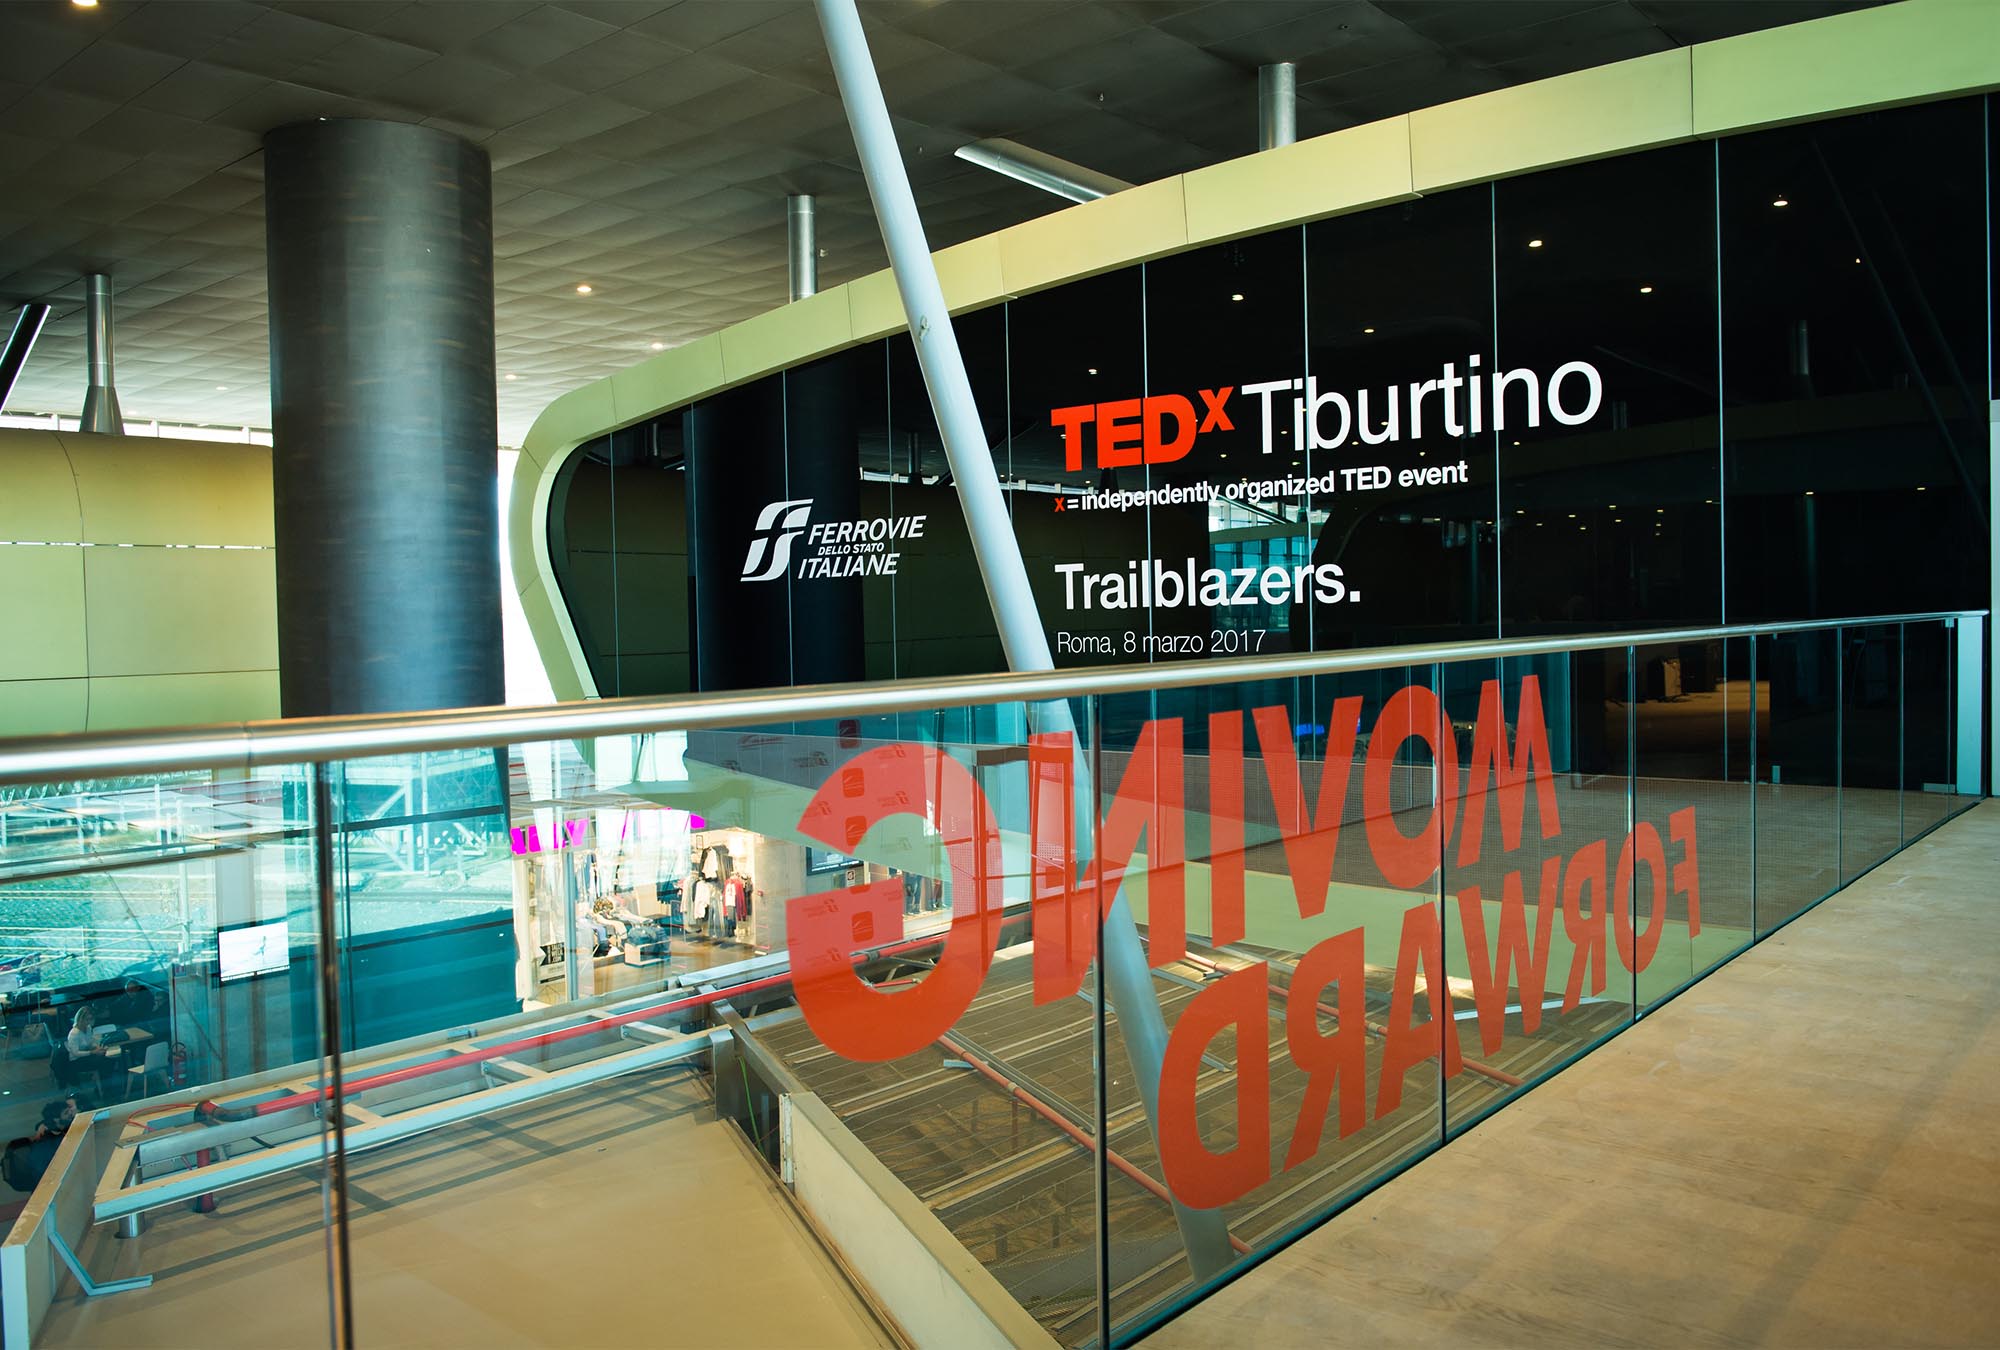 Tedx Tiburtino